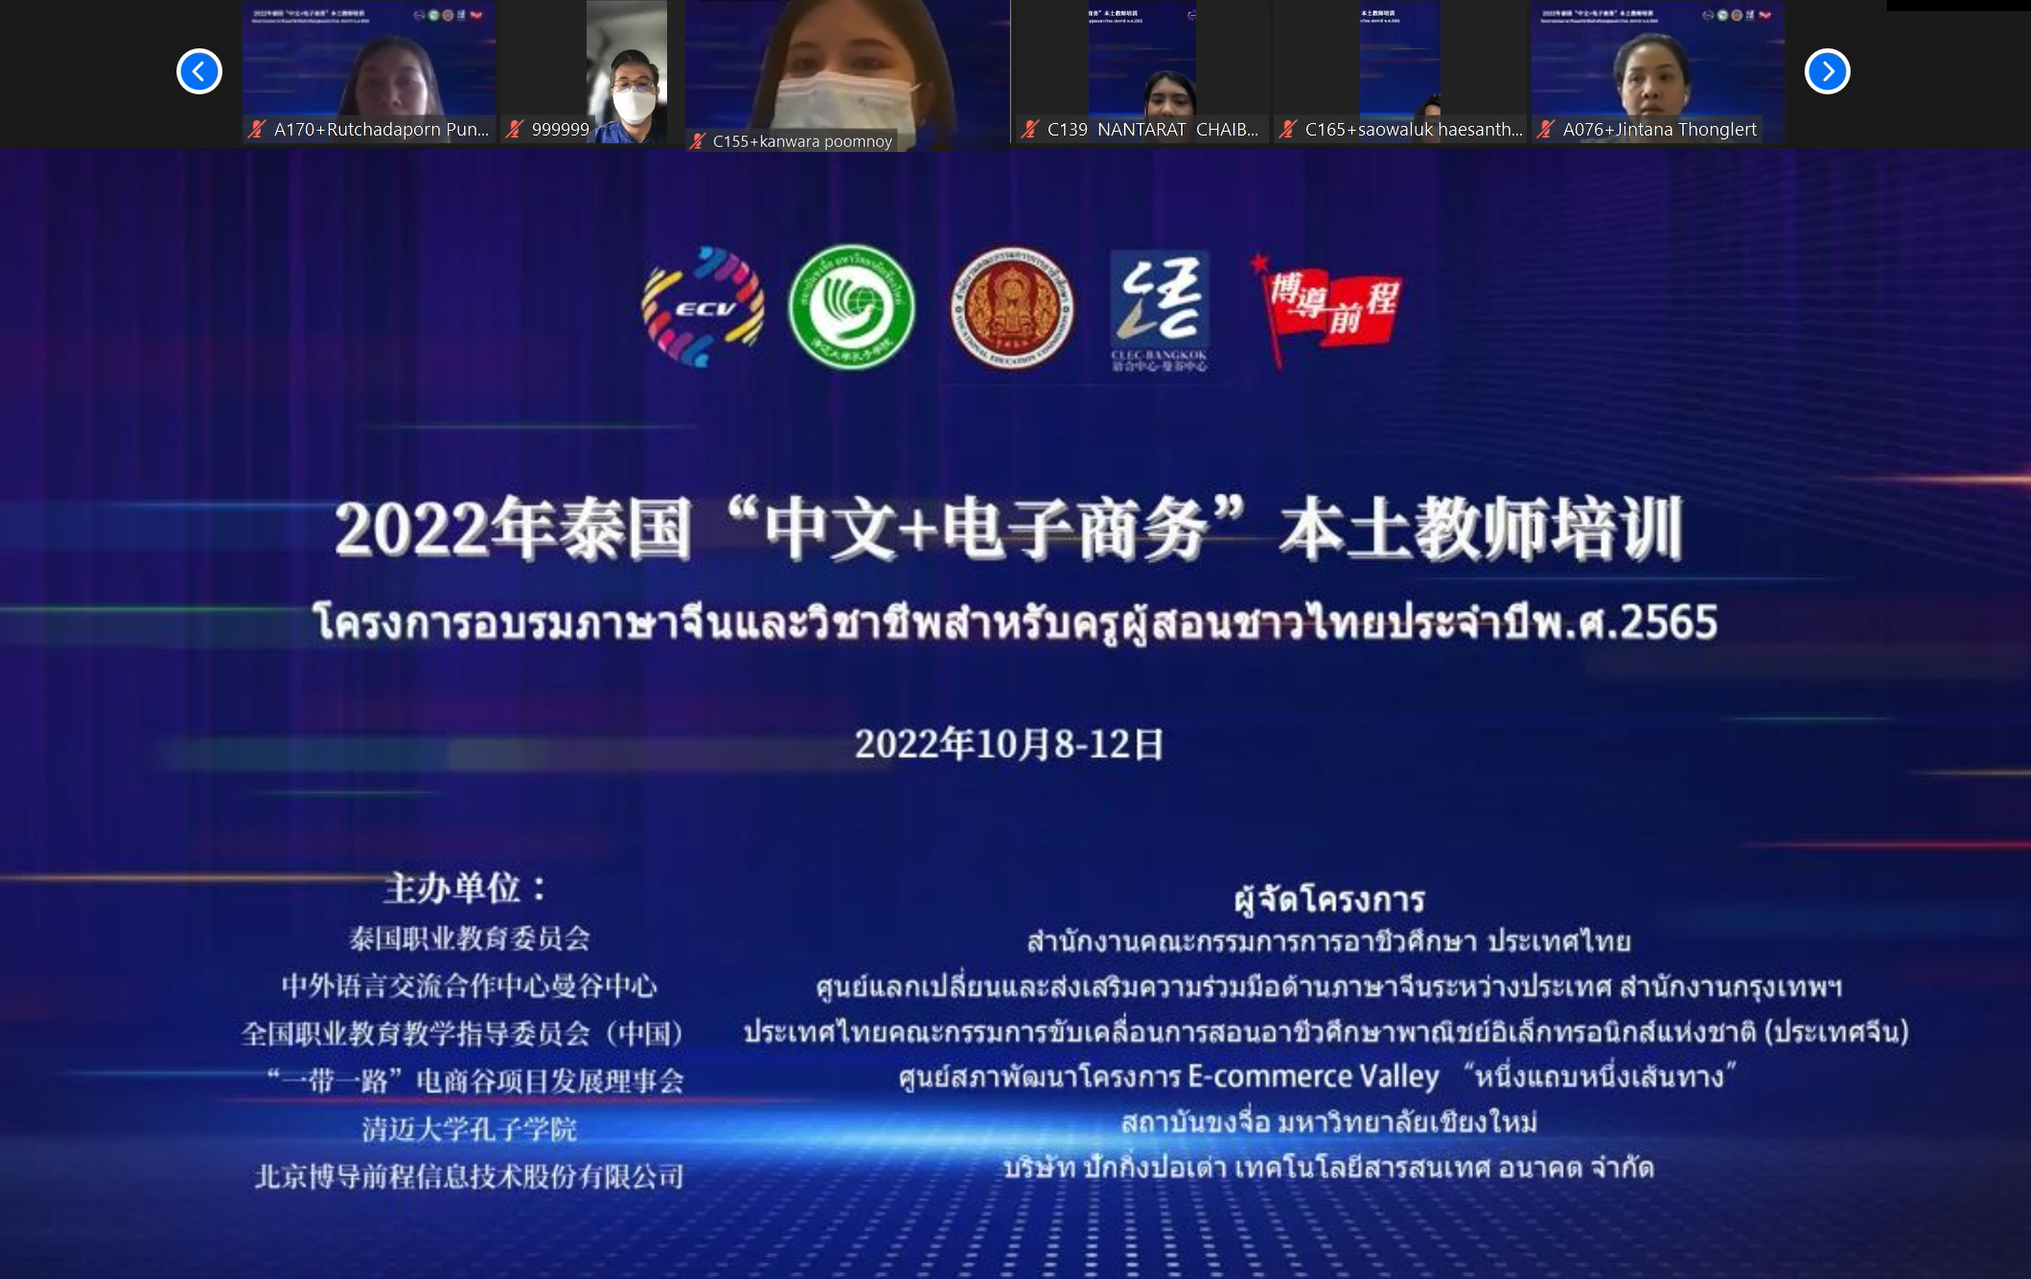 2022年泰国“中文+电子商务”本土教师培训顺利开班